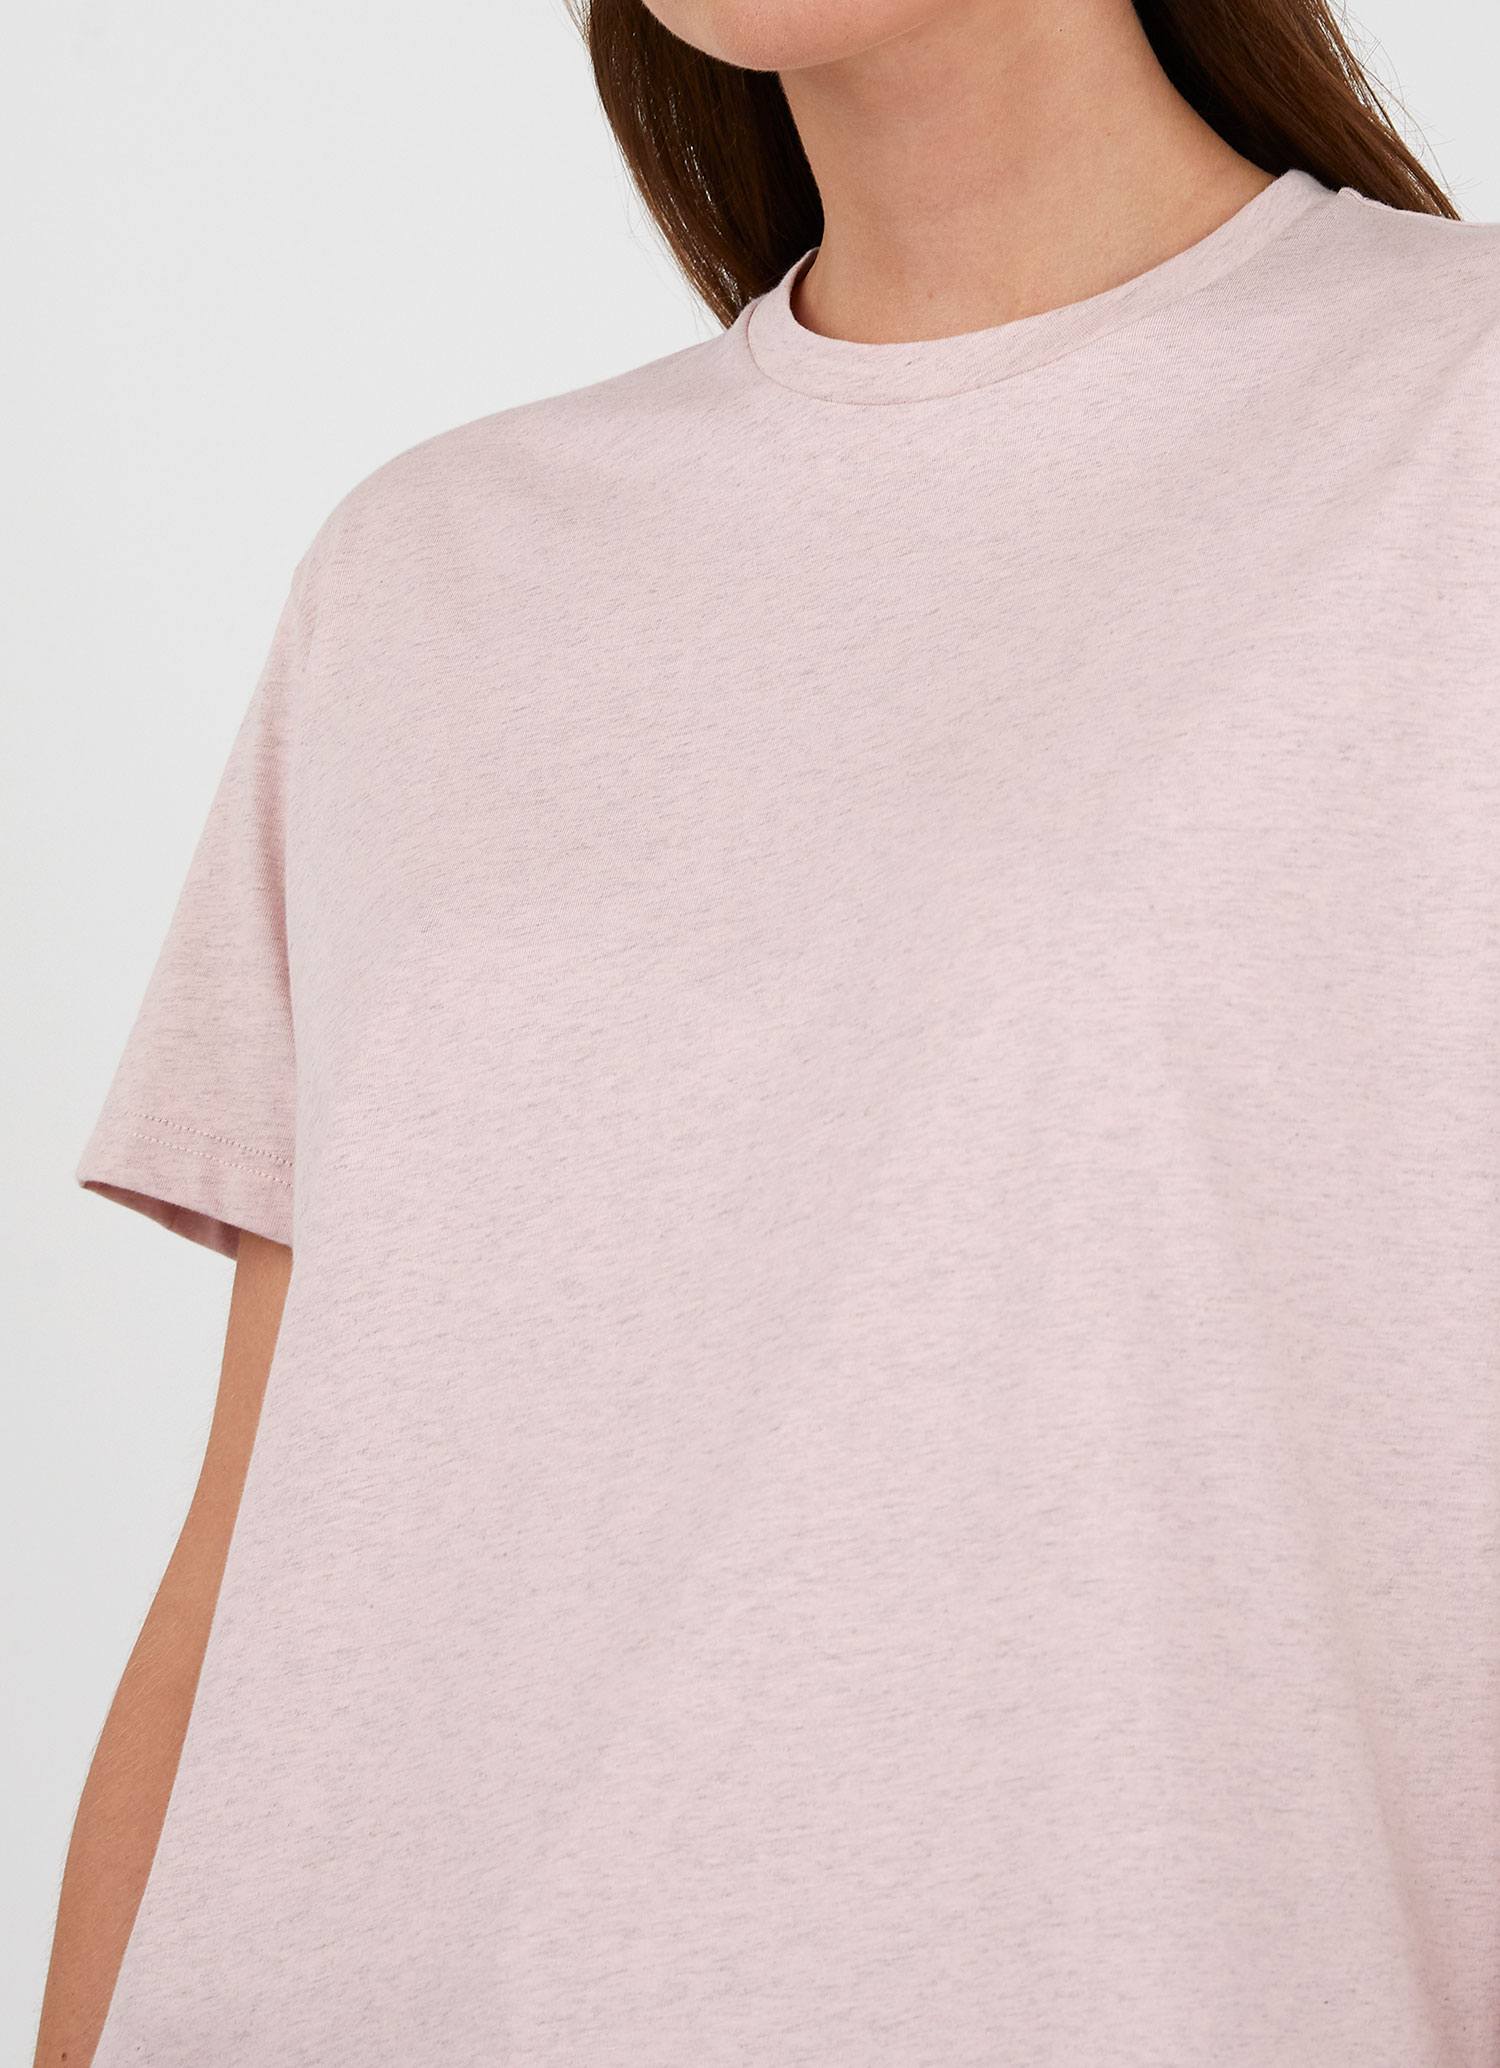 Women's Boy Fit T-shirt in Shell Pink Melange